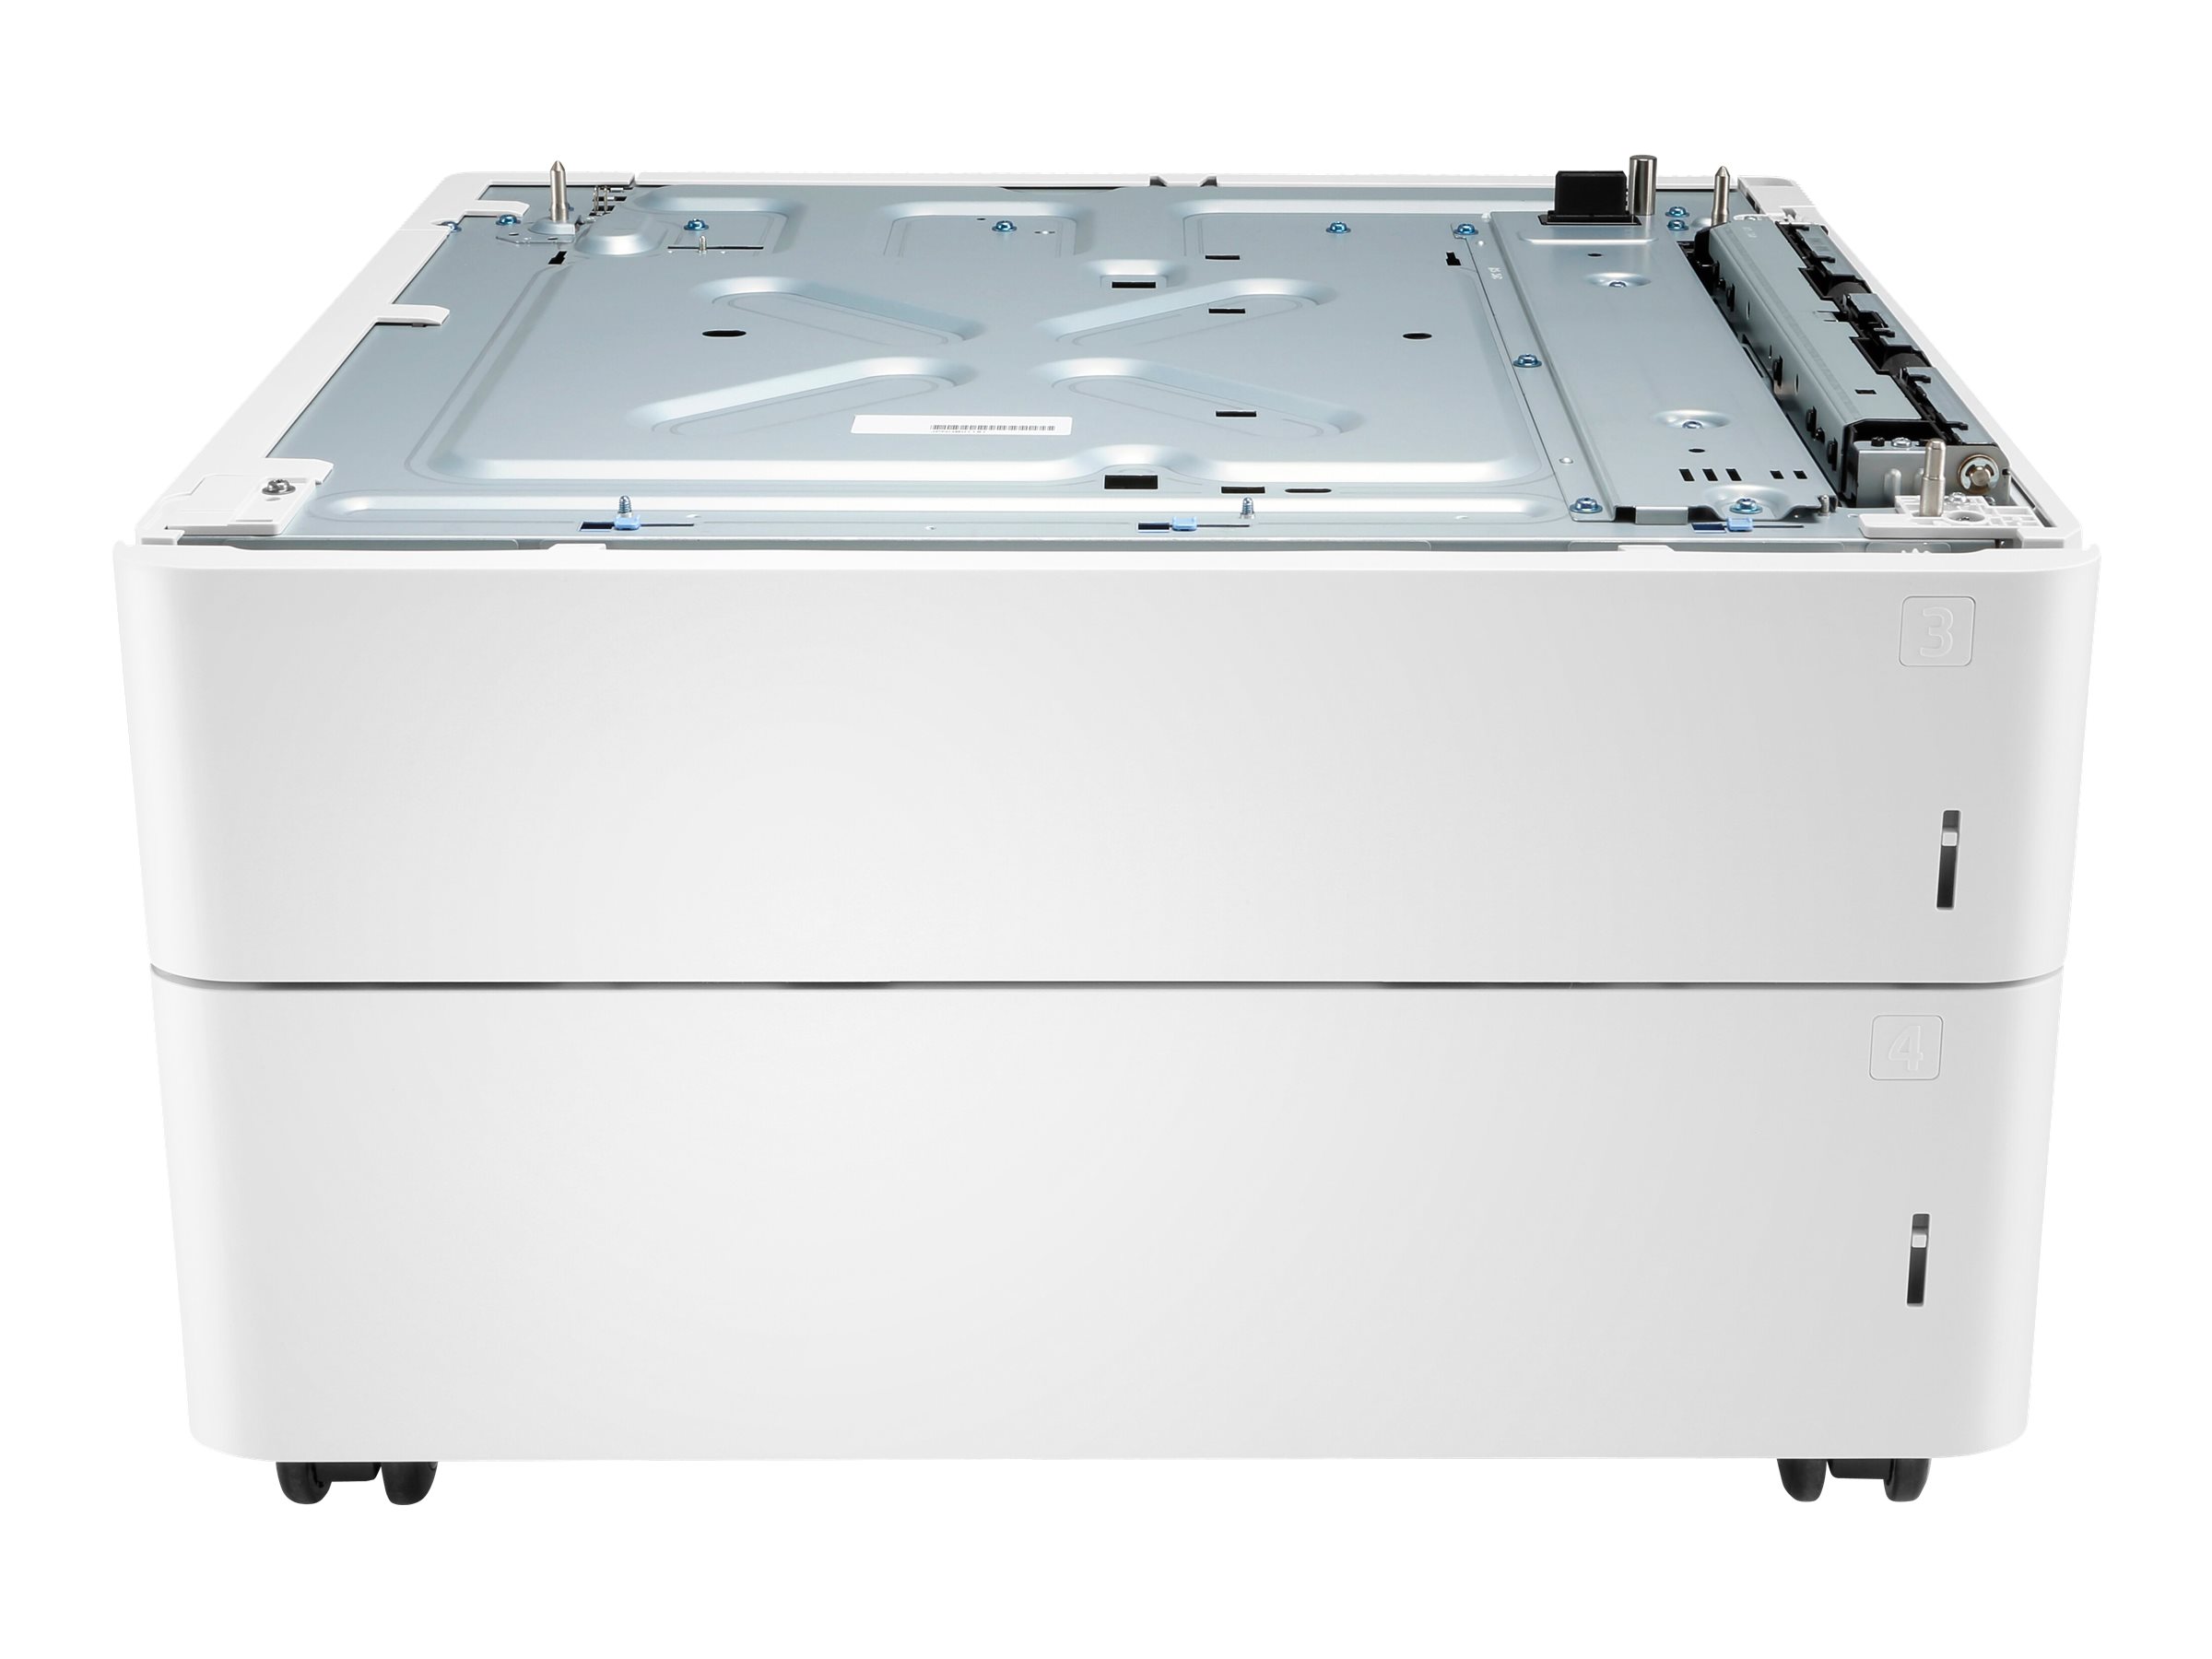 HP Papierzufhrung und Unterstand - Medienschacht - 1100 Bltter in 2 Schubladen (Trays) - fr Color LaserJet Enterprise MFP M77